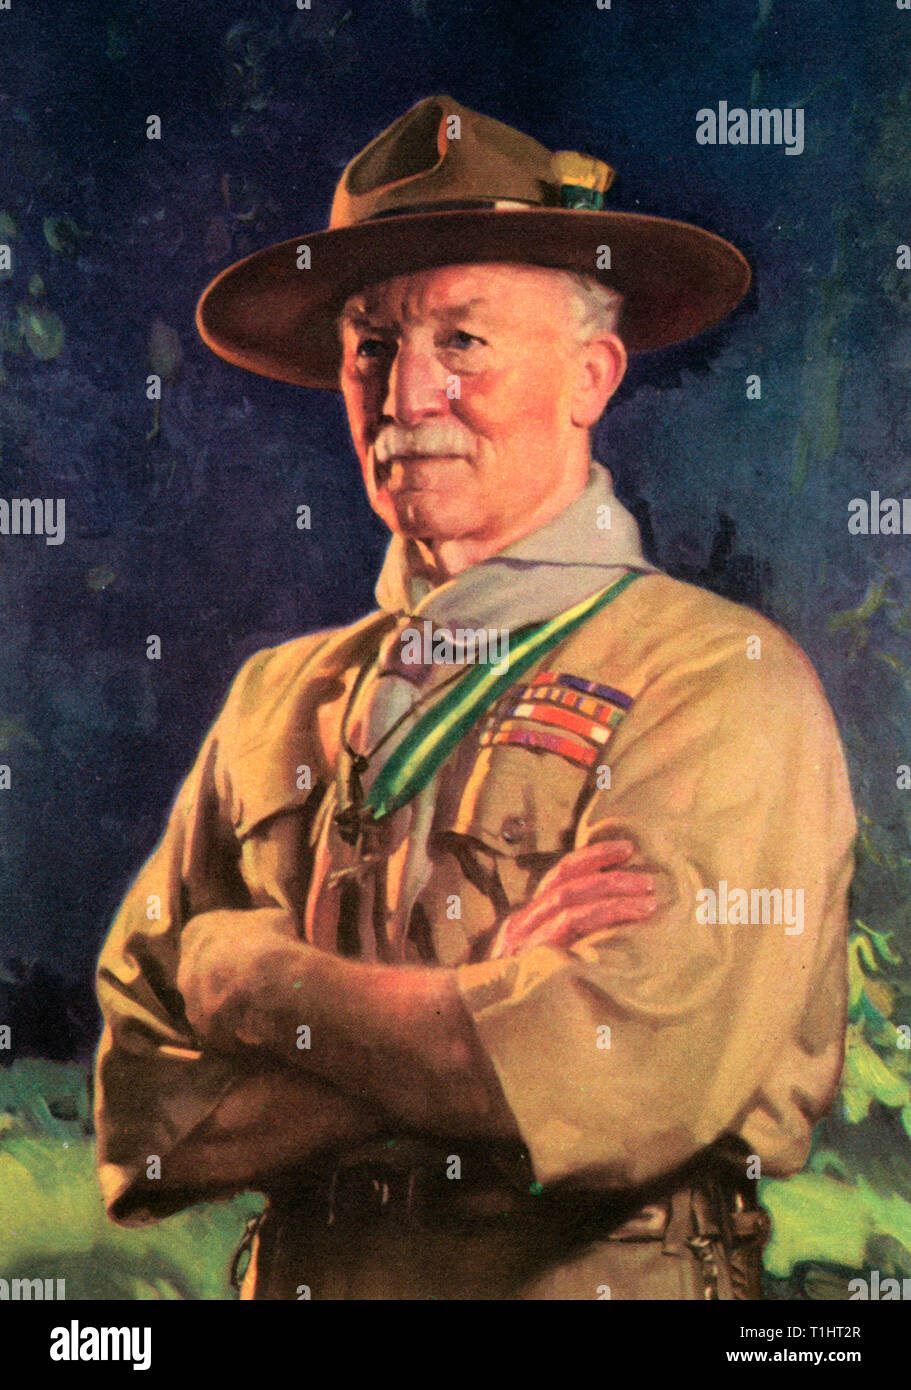 Lord Baden-Powell, 1929. Lieutenant général Robert Stephenson Smyth Baden-Powell, 1er baron Baden-Powell (1857-1941), officier de l'armée britannique, écrivain, fondateur et premier scout en chef du mouvement Scout mondial. Baden-Powell a écrit les premières éditions du Scoutisme pour les garçons, qui a inspiré le mouvement Scout. Banque D'Images